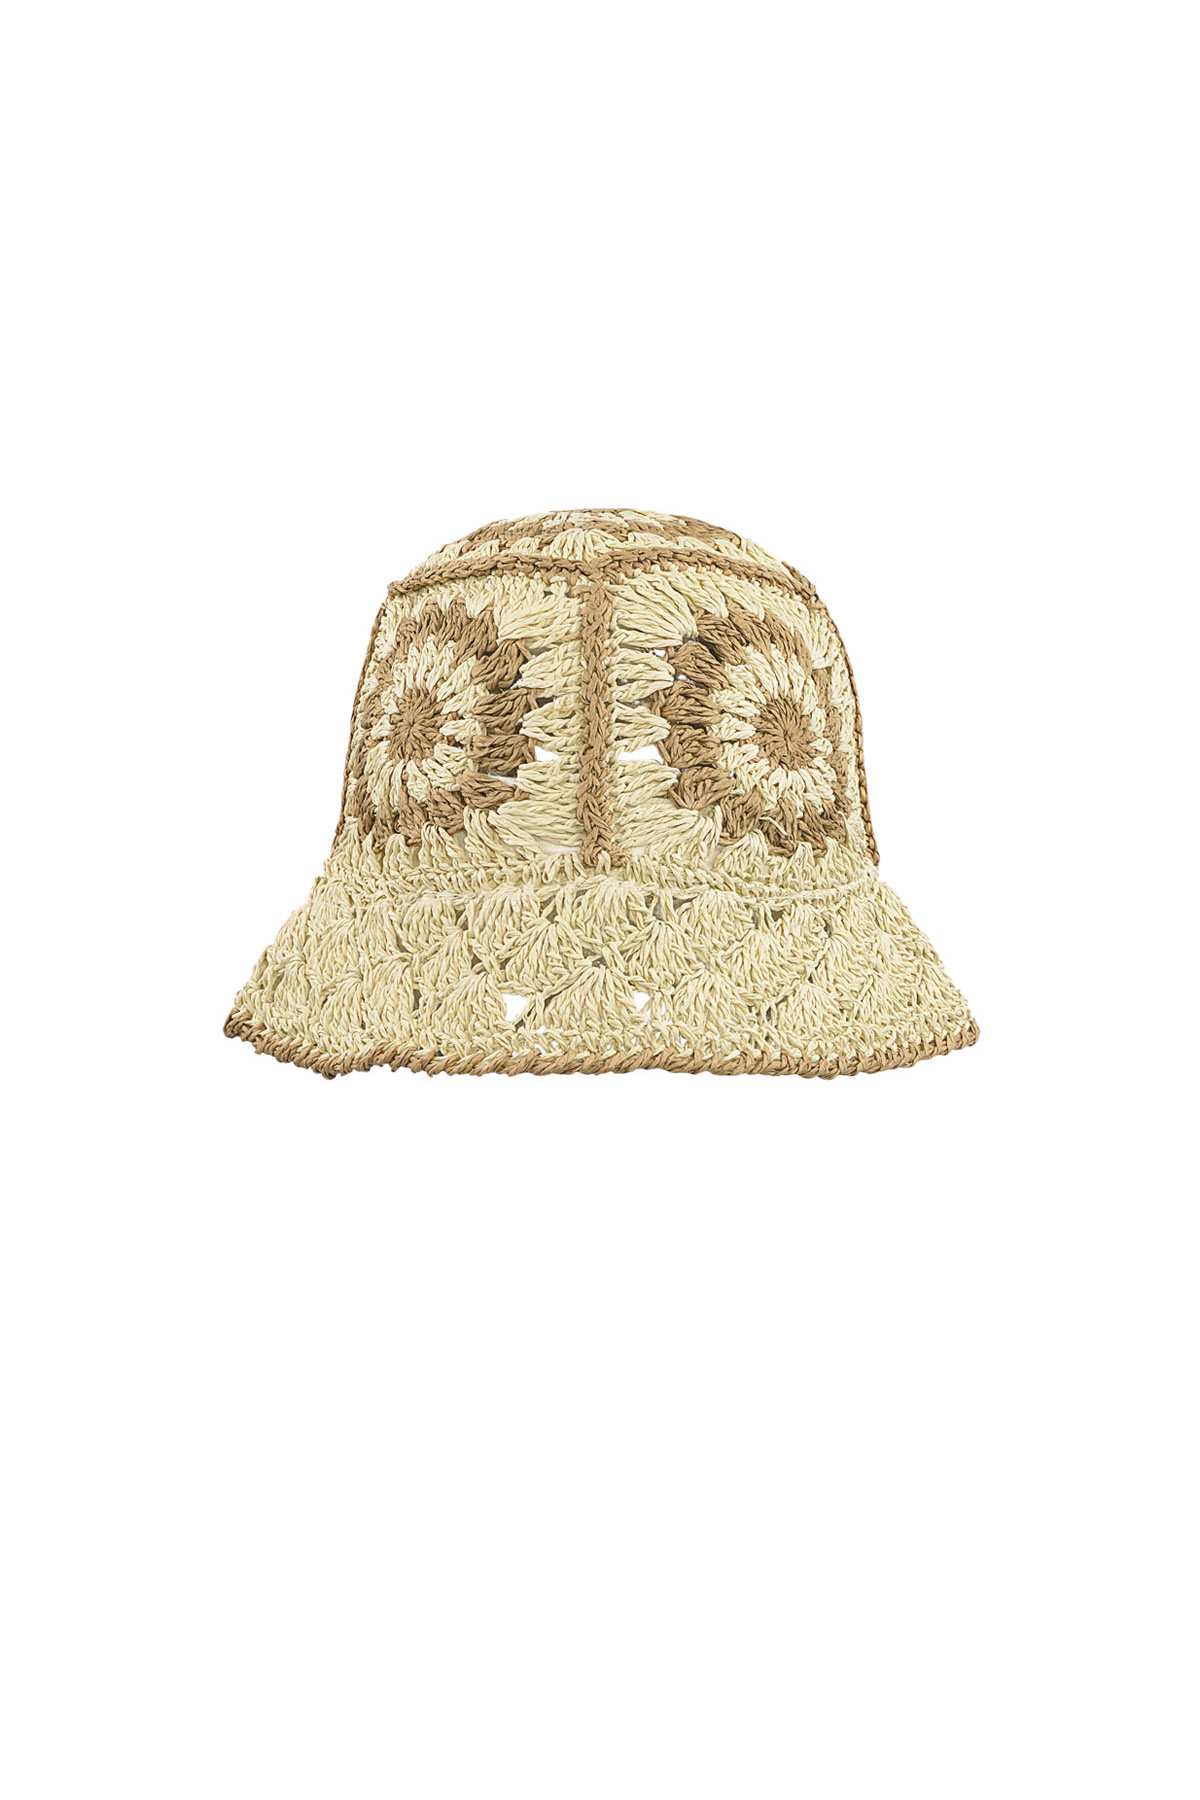 Crochet hoedje met bloemen - beige h5 